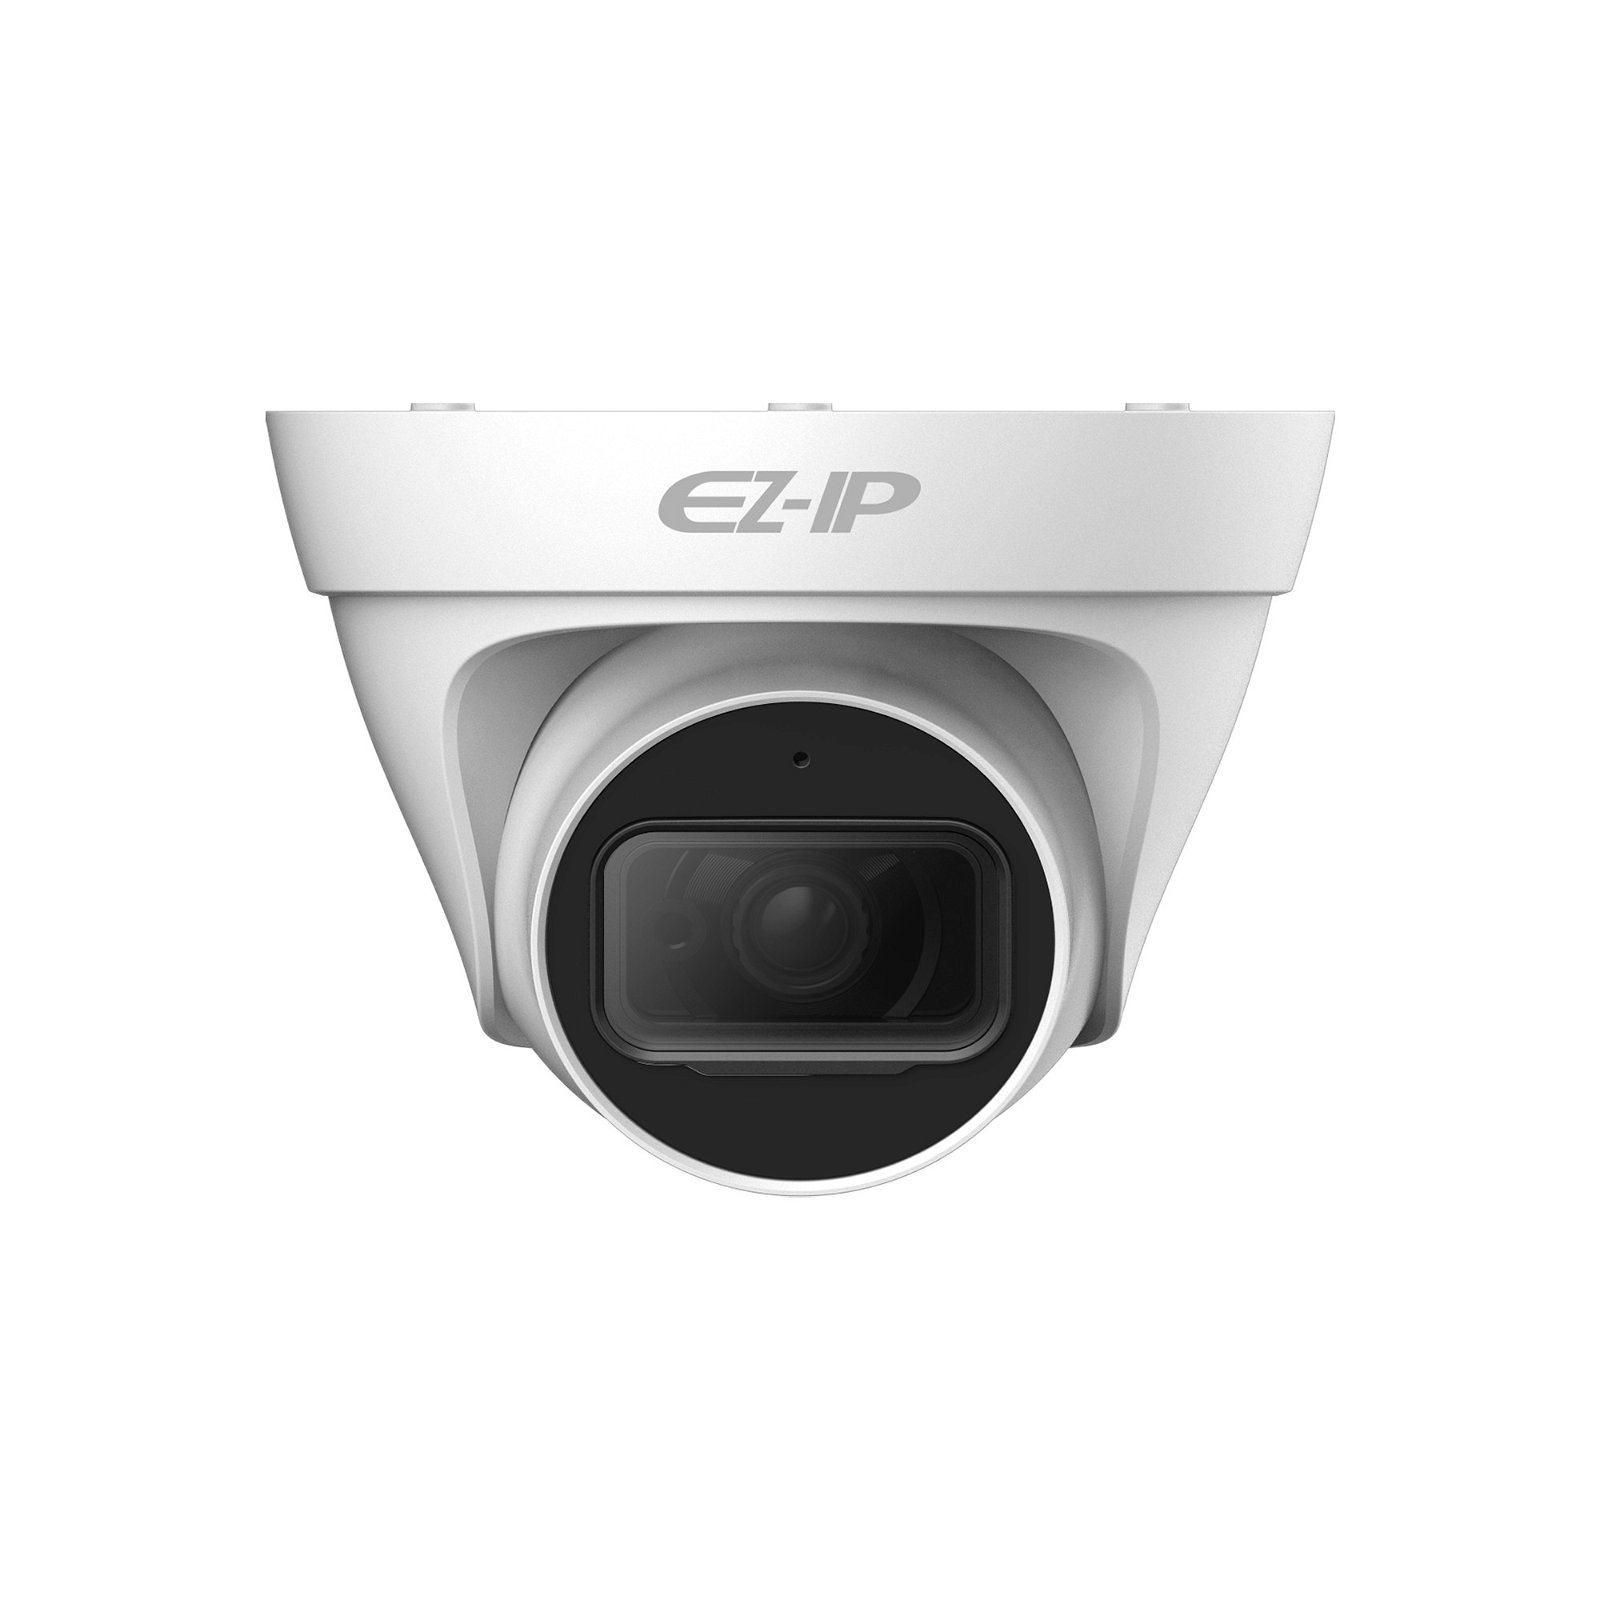 IP kamera Dahua EZ-IP IPC-T1B20P-0360B 2Mpx, 3,6 mm, PoE